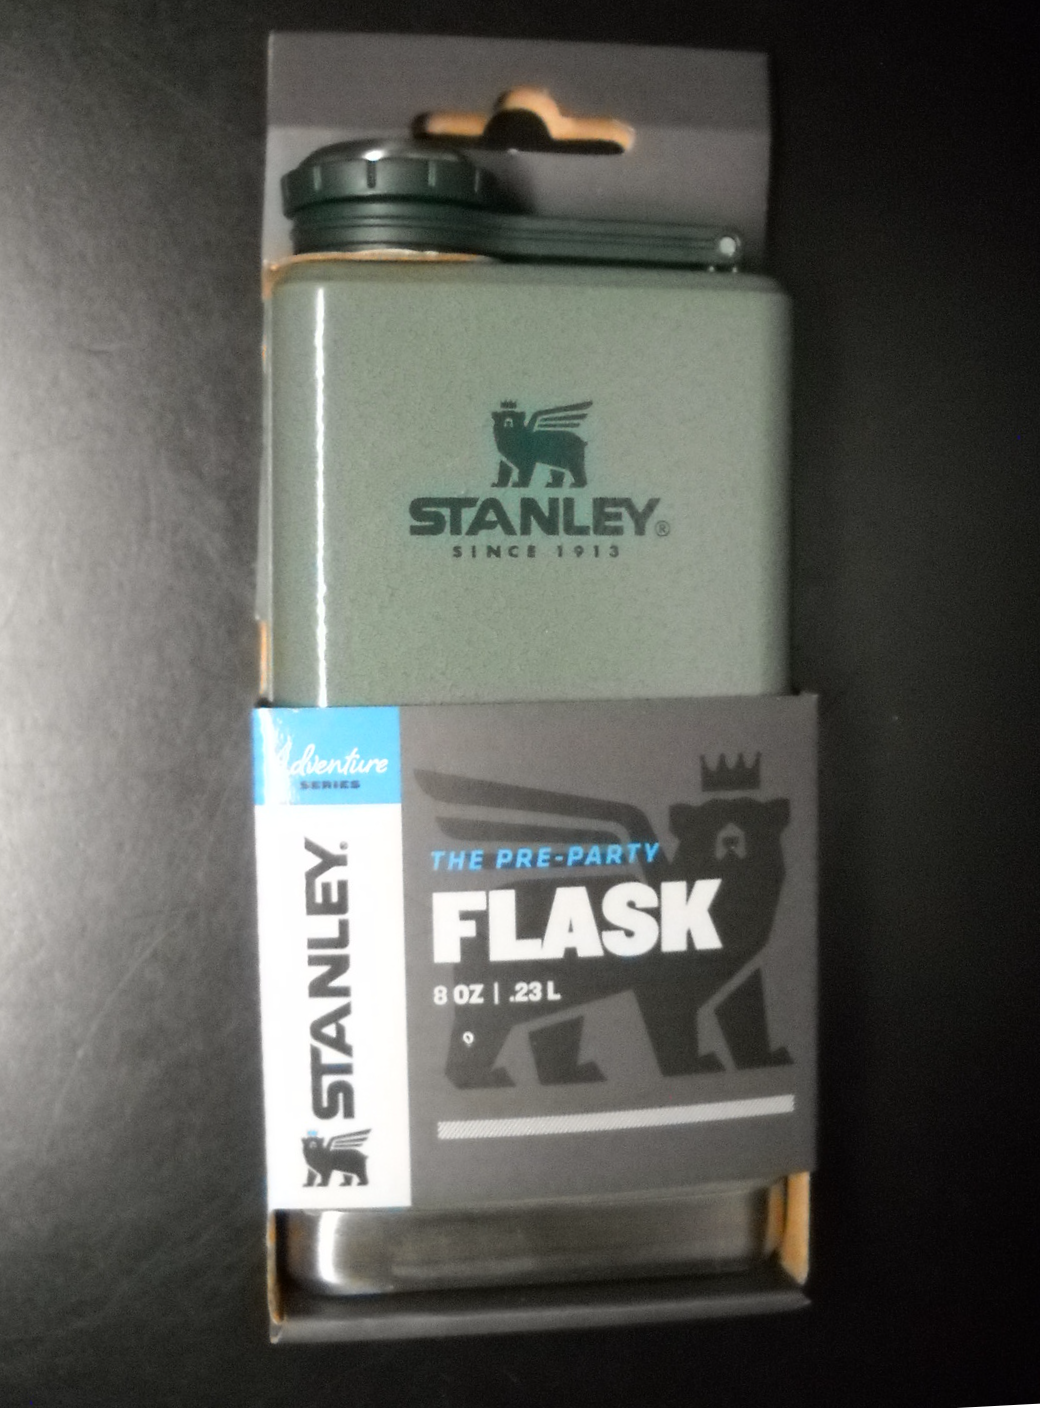 Stanley Stainless Steel Flask 8 Oz Never Lose Cap Leakproof Unused Sealed Box - $12.99